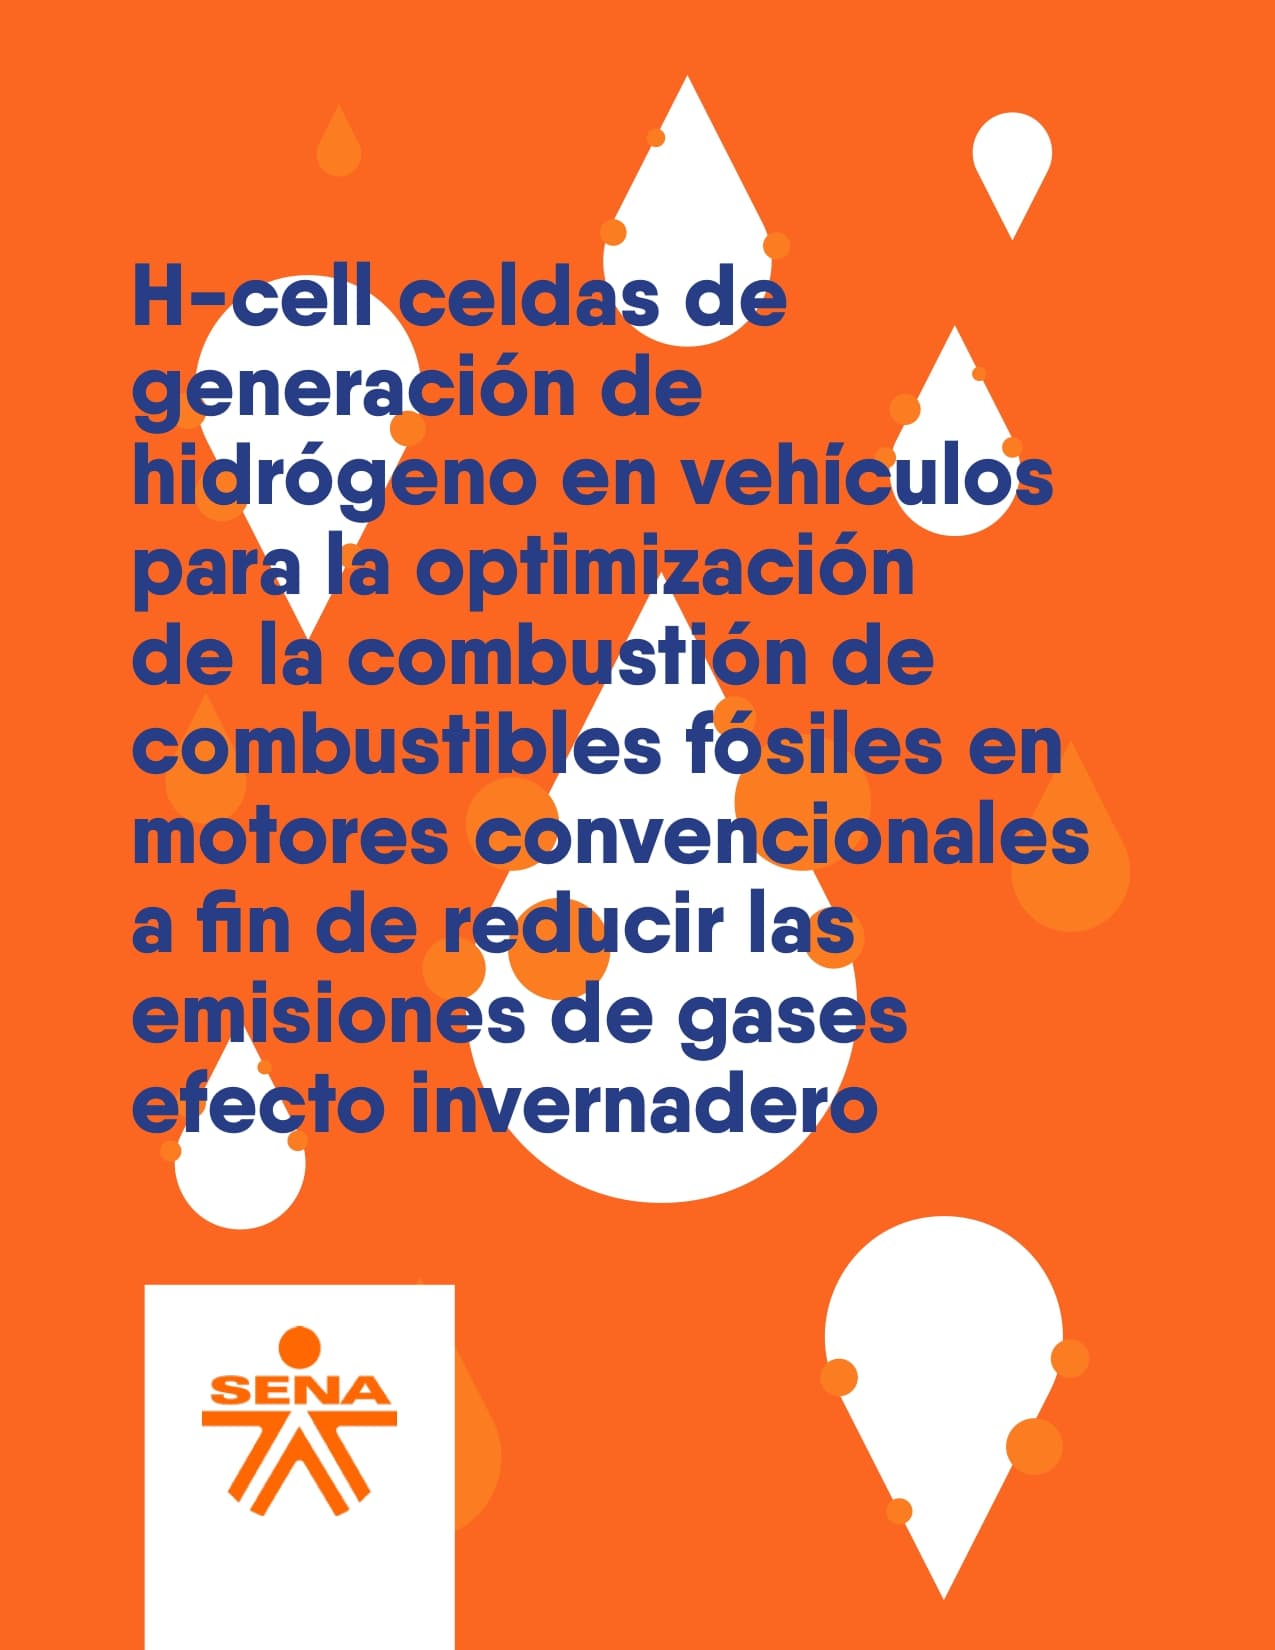 H-CELL Celdas de generación de hidrógeno en vehículos para la optimización de la combustión de combustibles fósiles